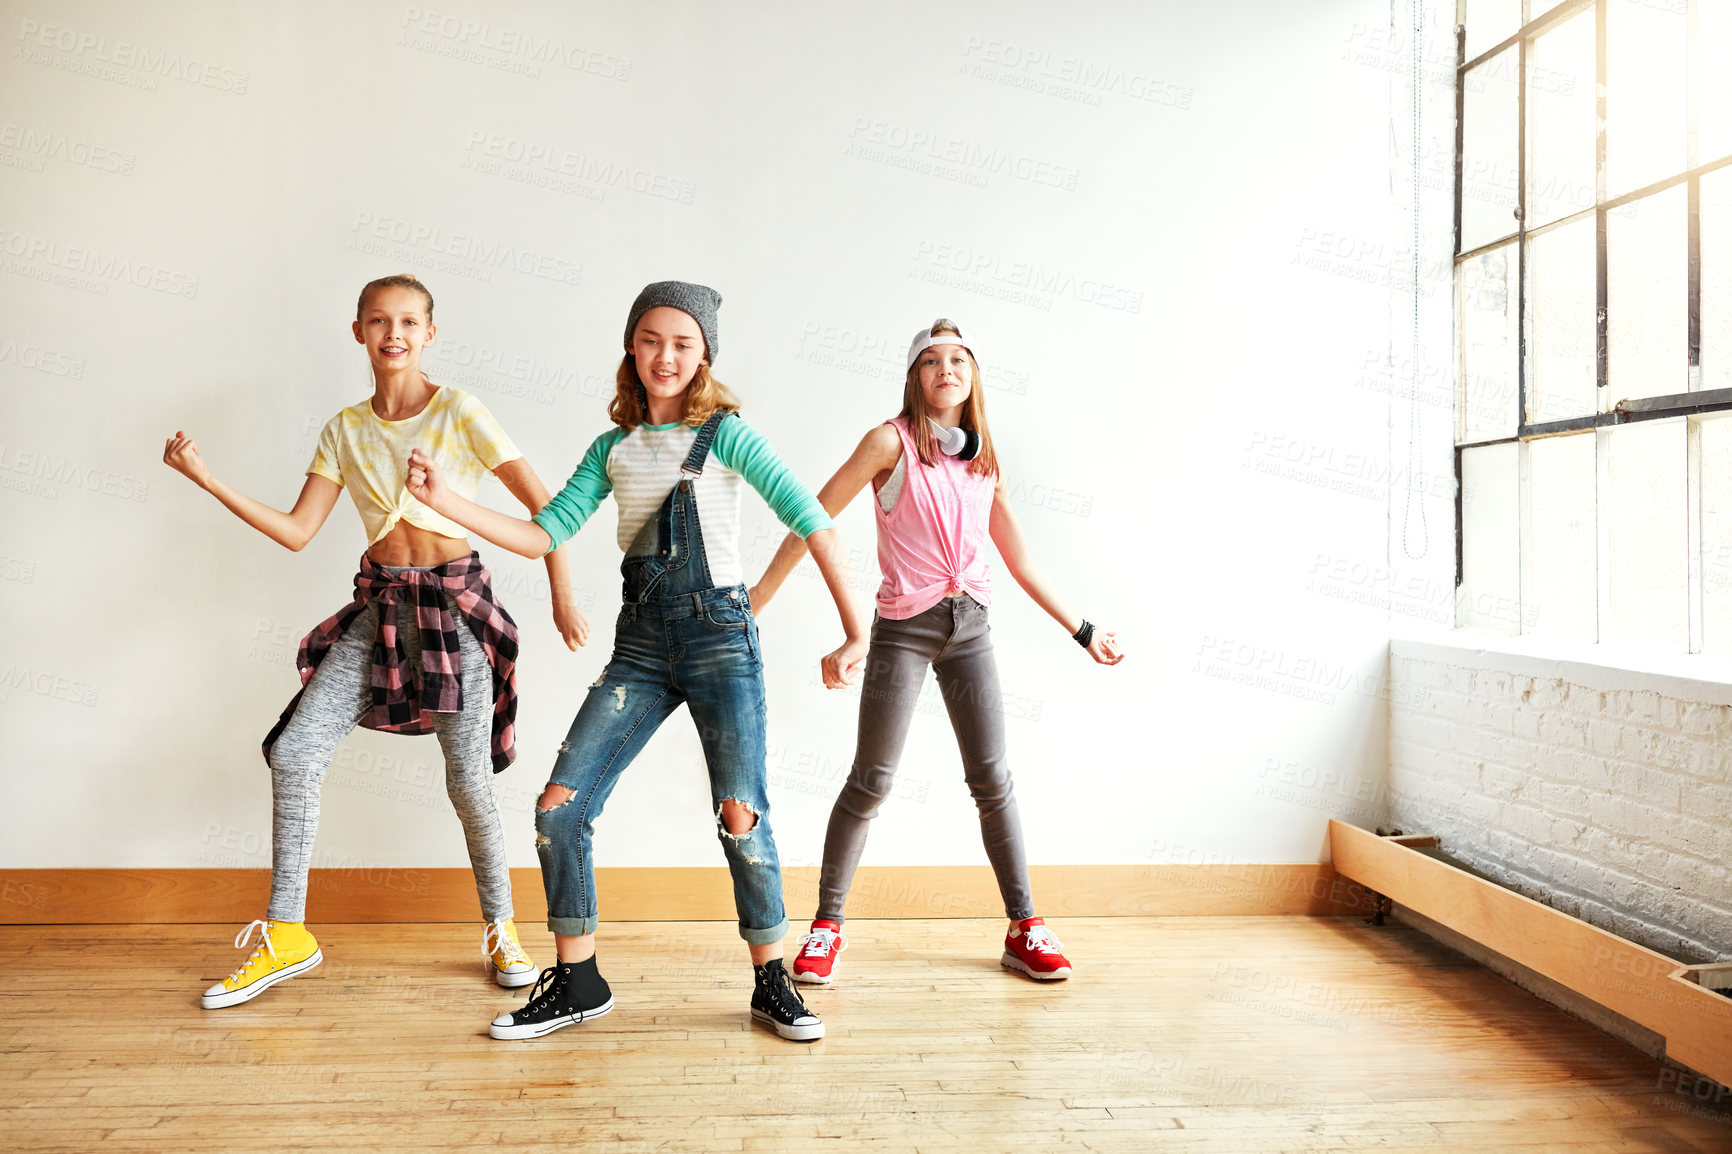 Buy stock photo Shot of young girls dancing in a dance studio